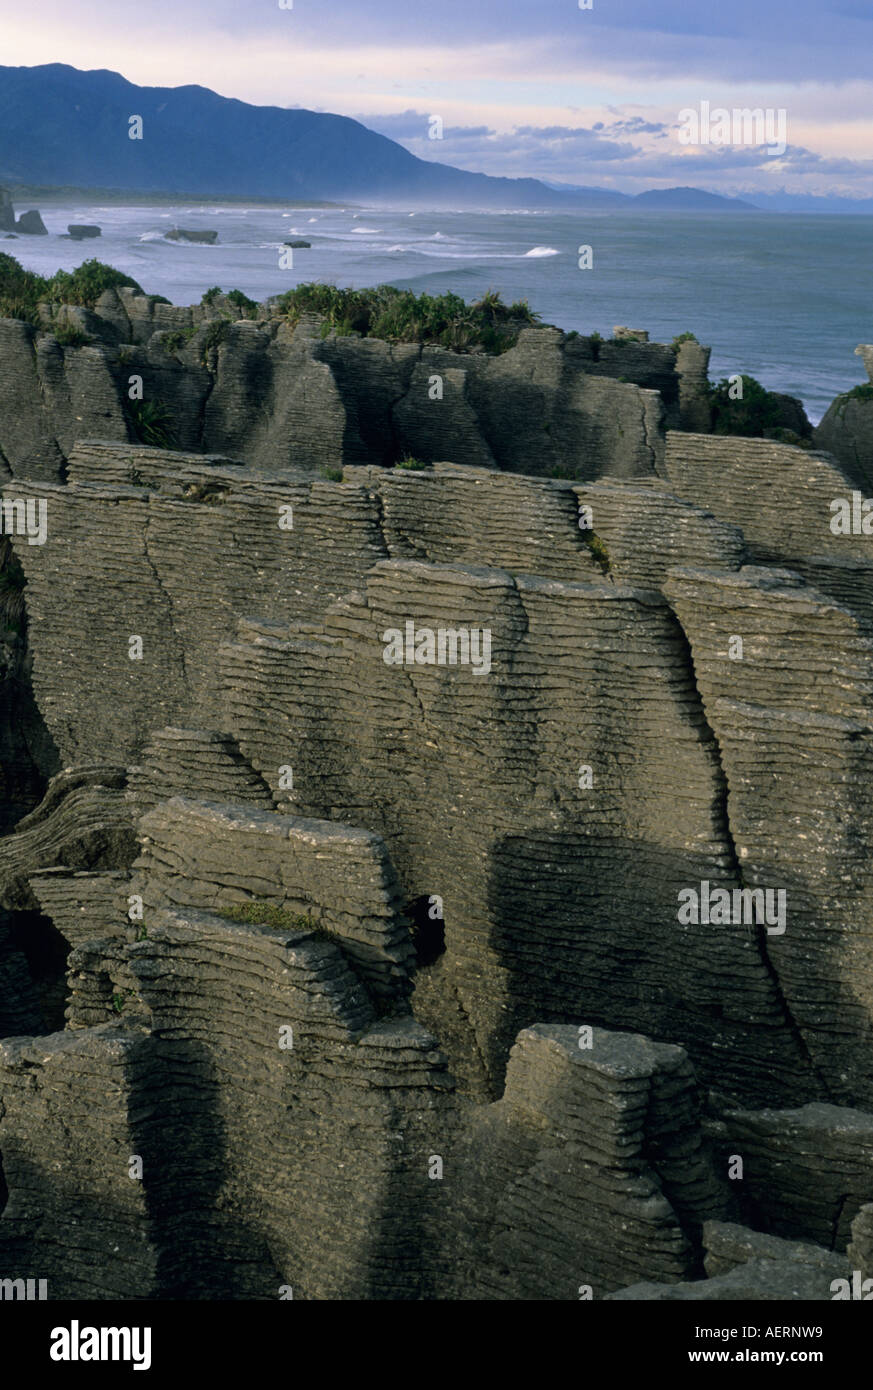 Neuseeland, Südinsel, Punakaiki (Pfannkuchen) Felsen, berühmten Kalksteinfelsen Stockfoto